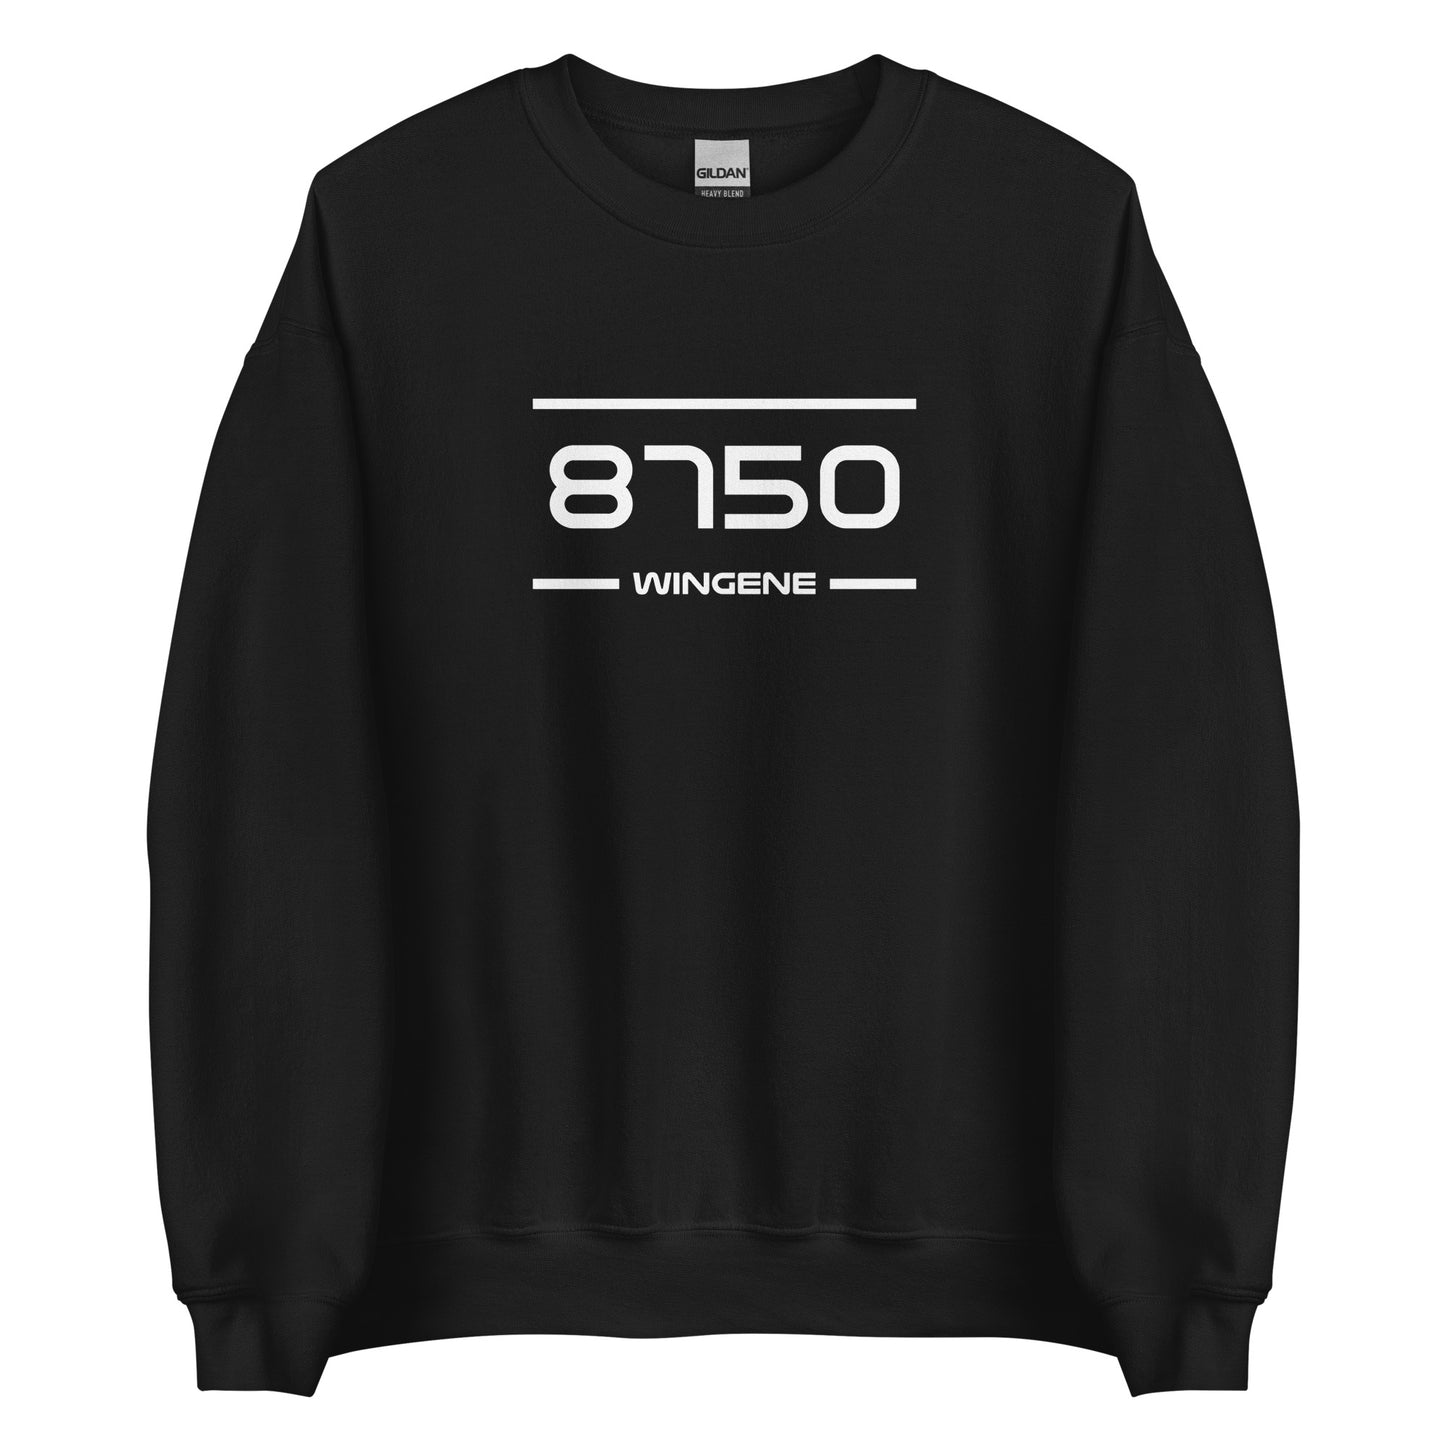 Sweater - 8750 - Wingene (M/V)